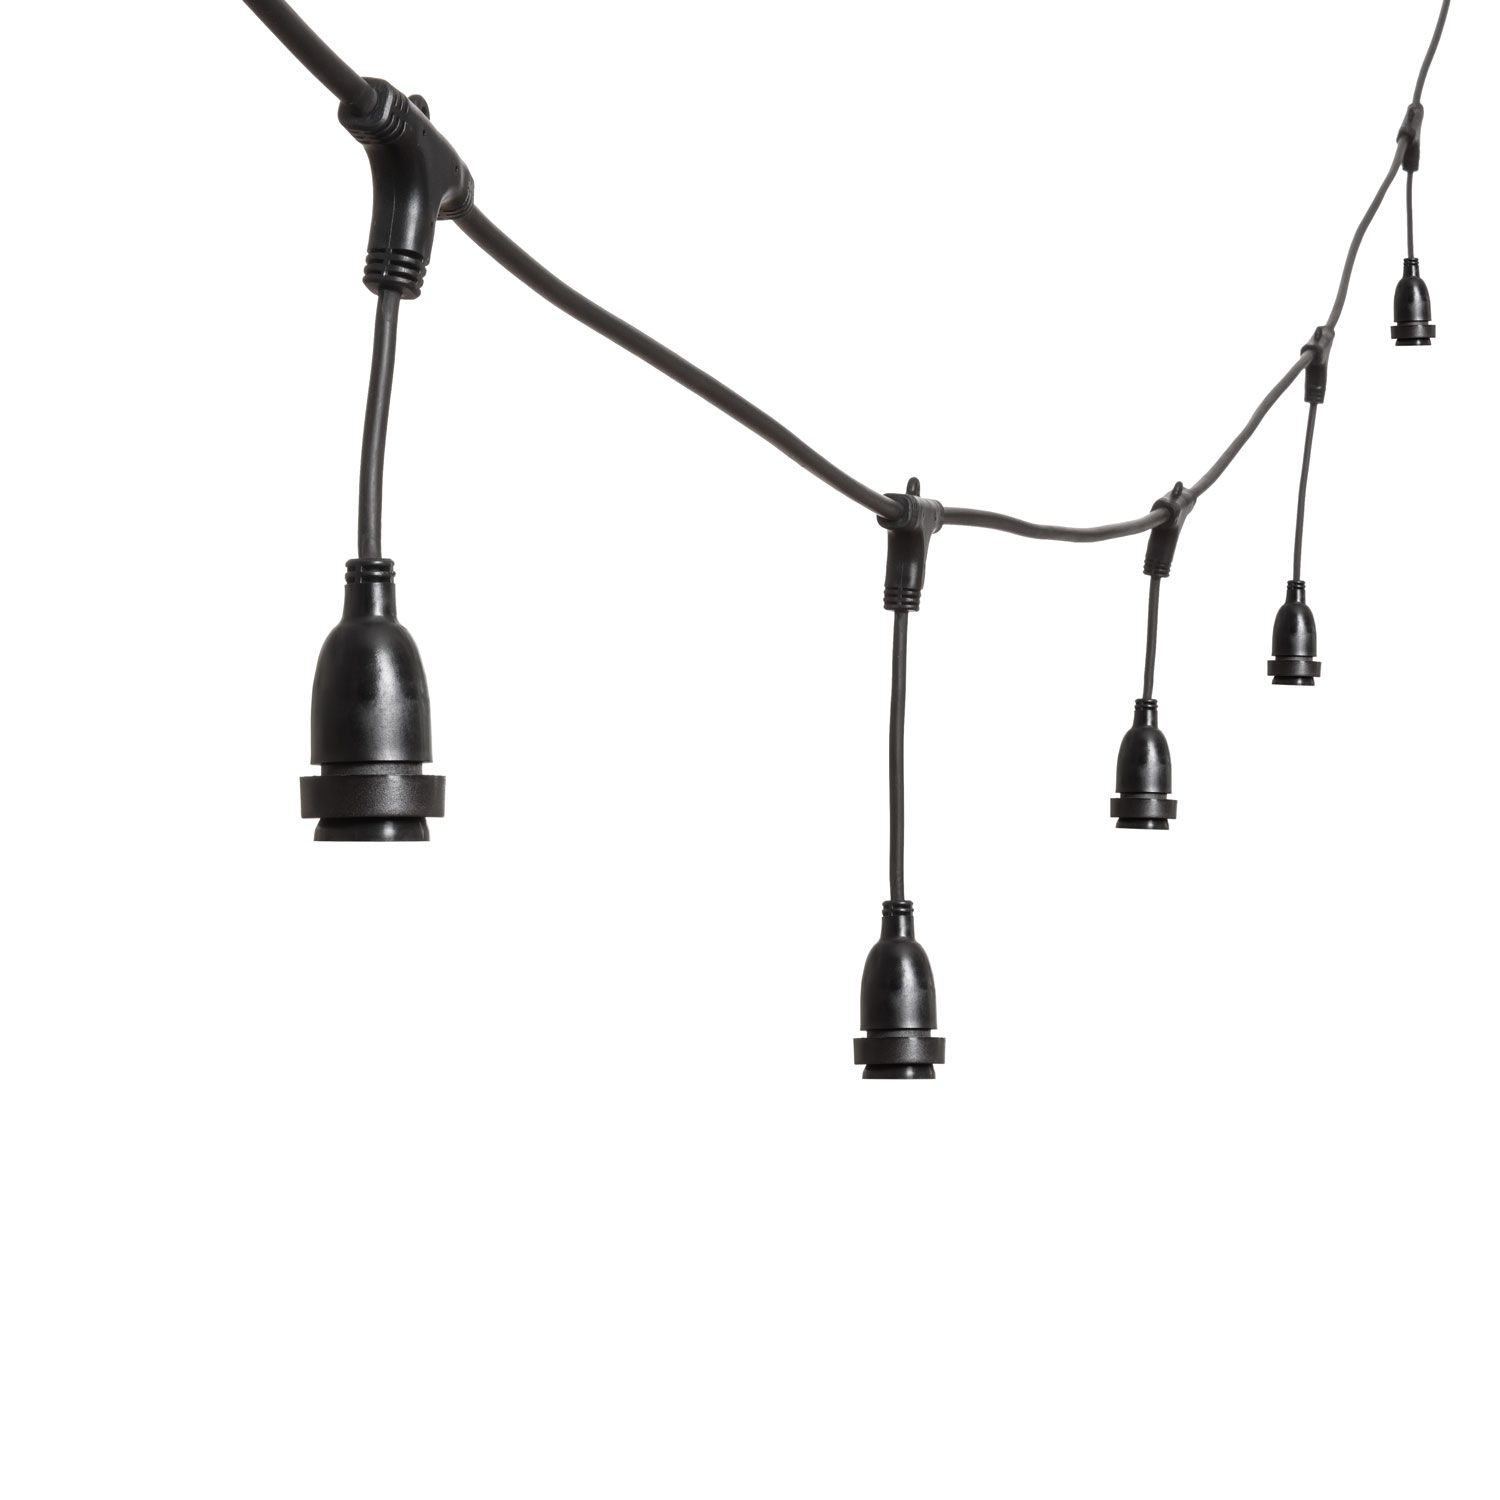 Lichterkette 5 m, 8 hängende E27-Fassungen, h 30 cm, schwarzes Kabel, erweiterbar